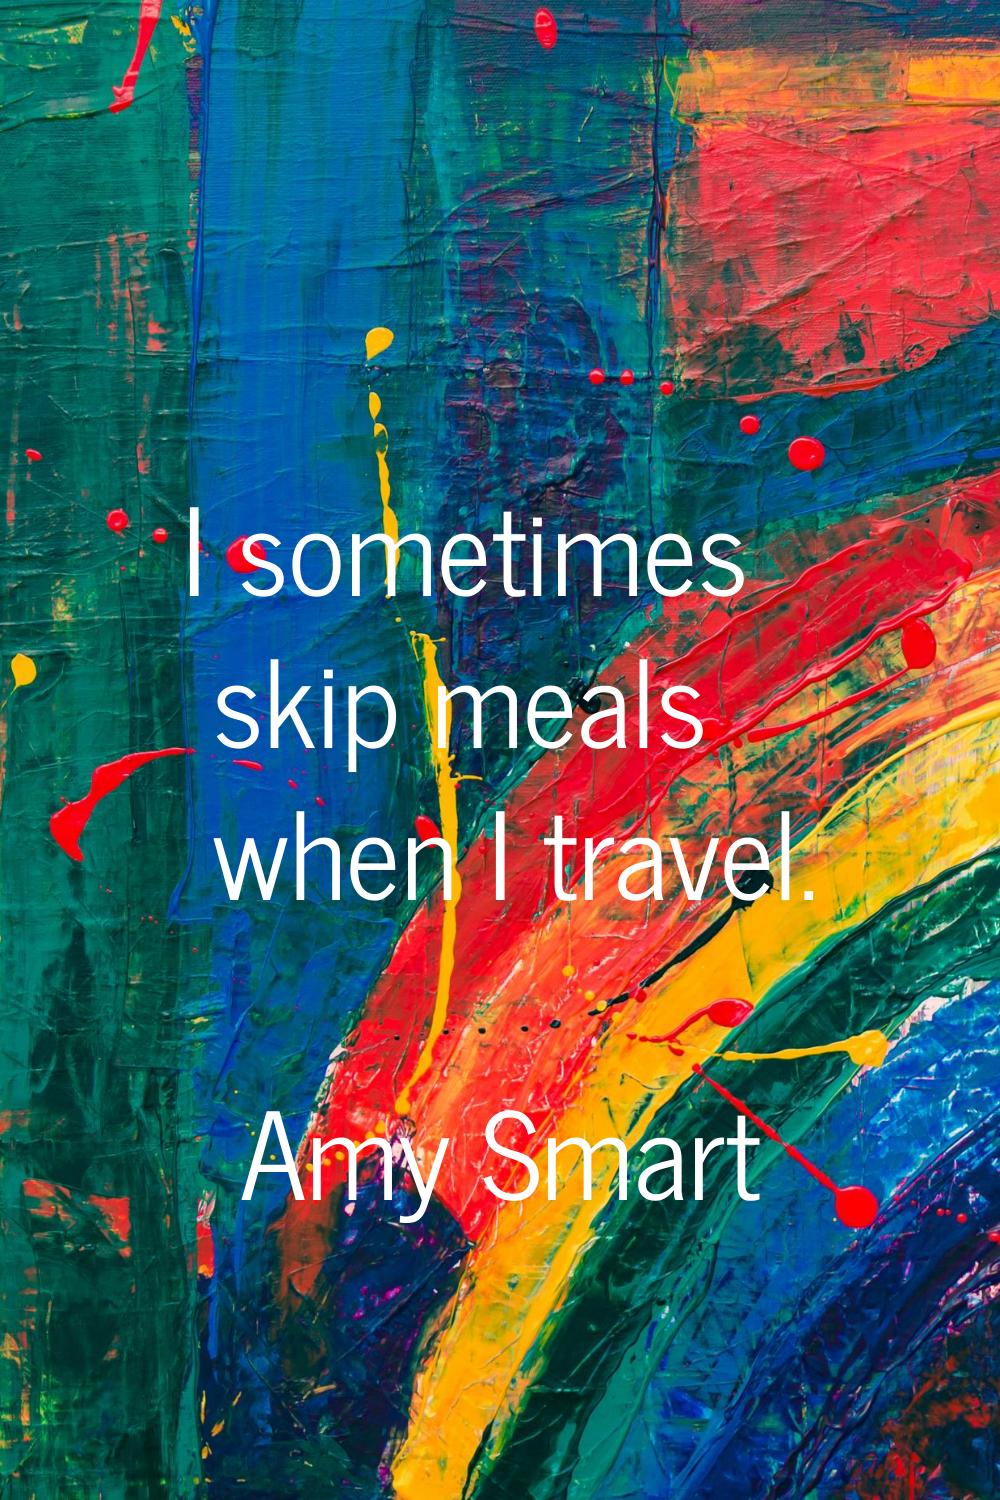 I sometimes skip meals when I travel.